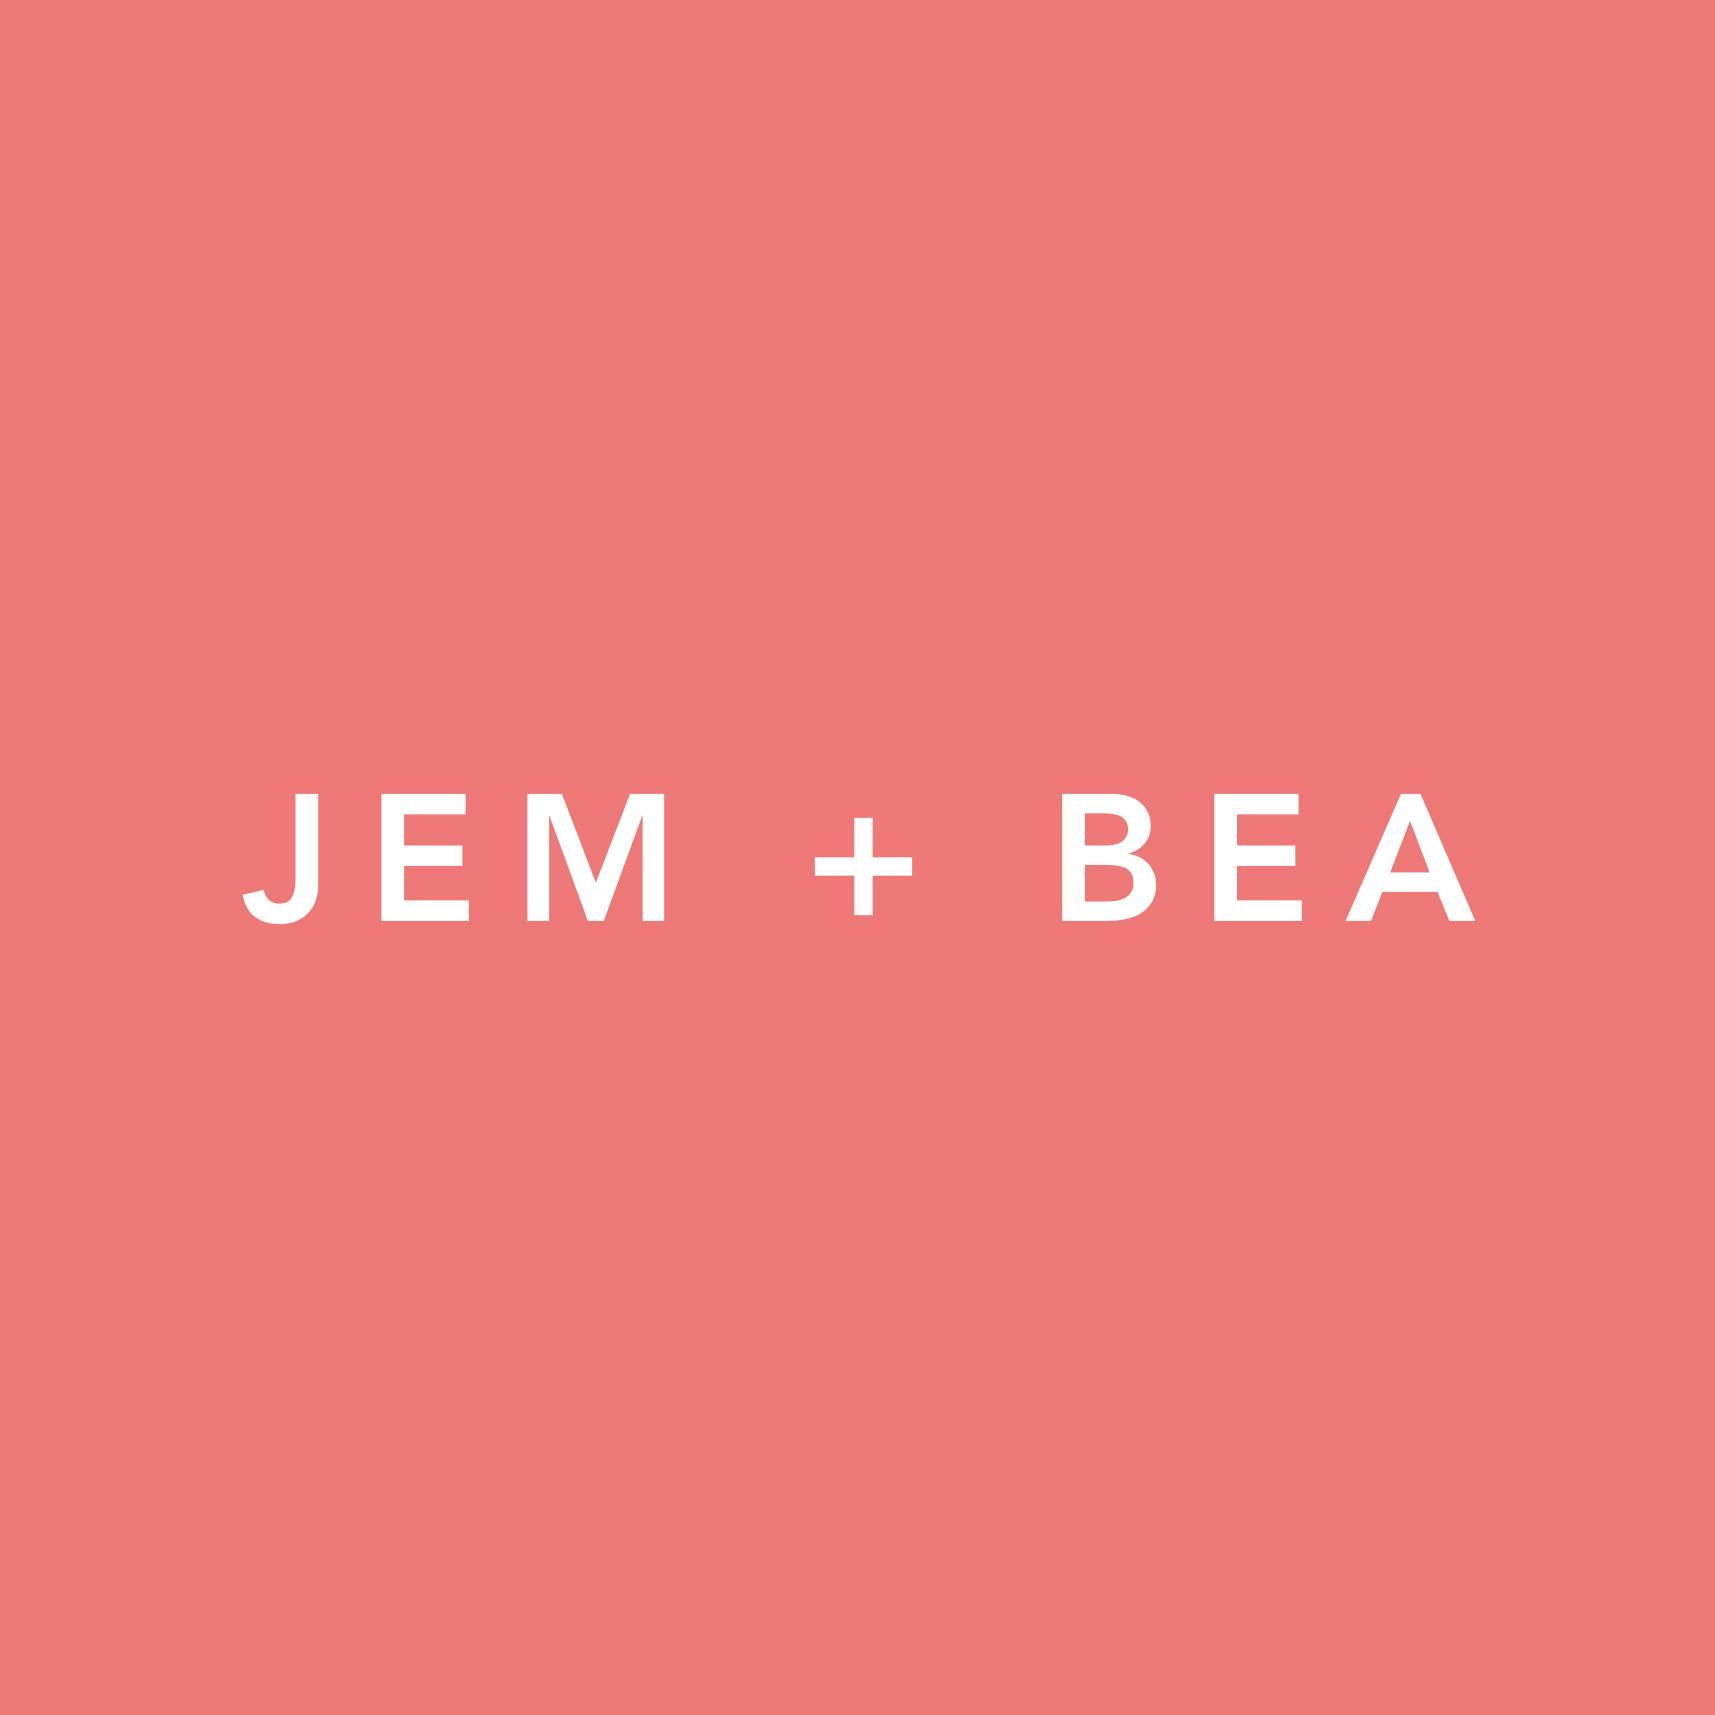 Jem + Bea